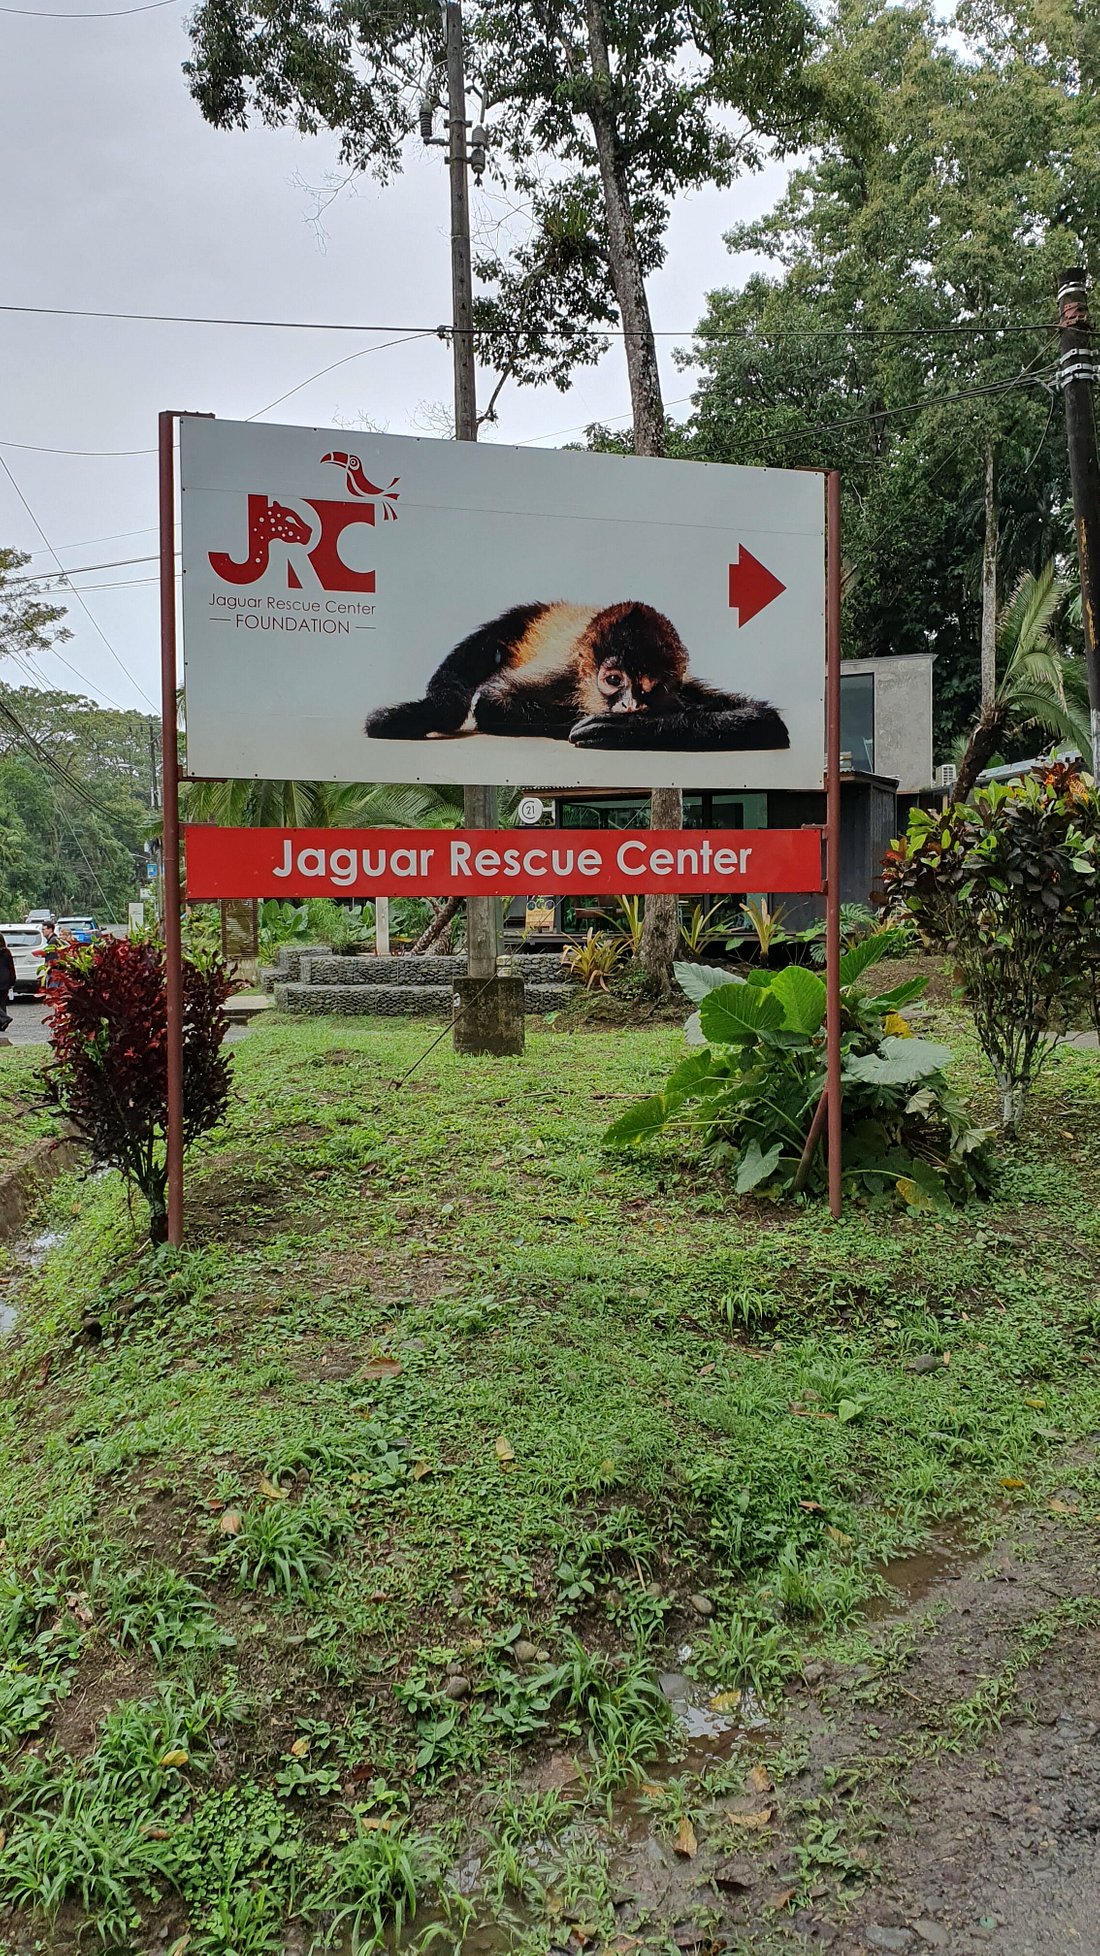 fundacion-jaguar-rescue-center-entrance